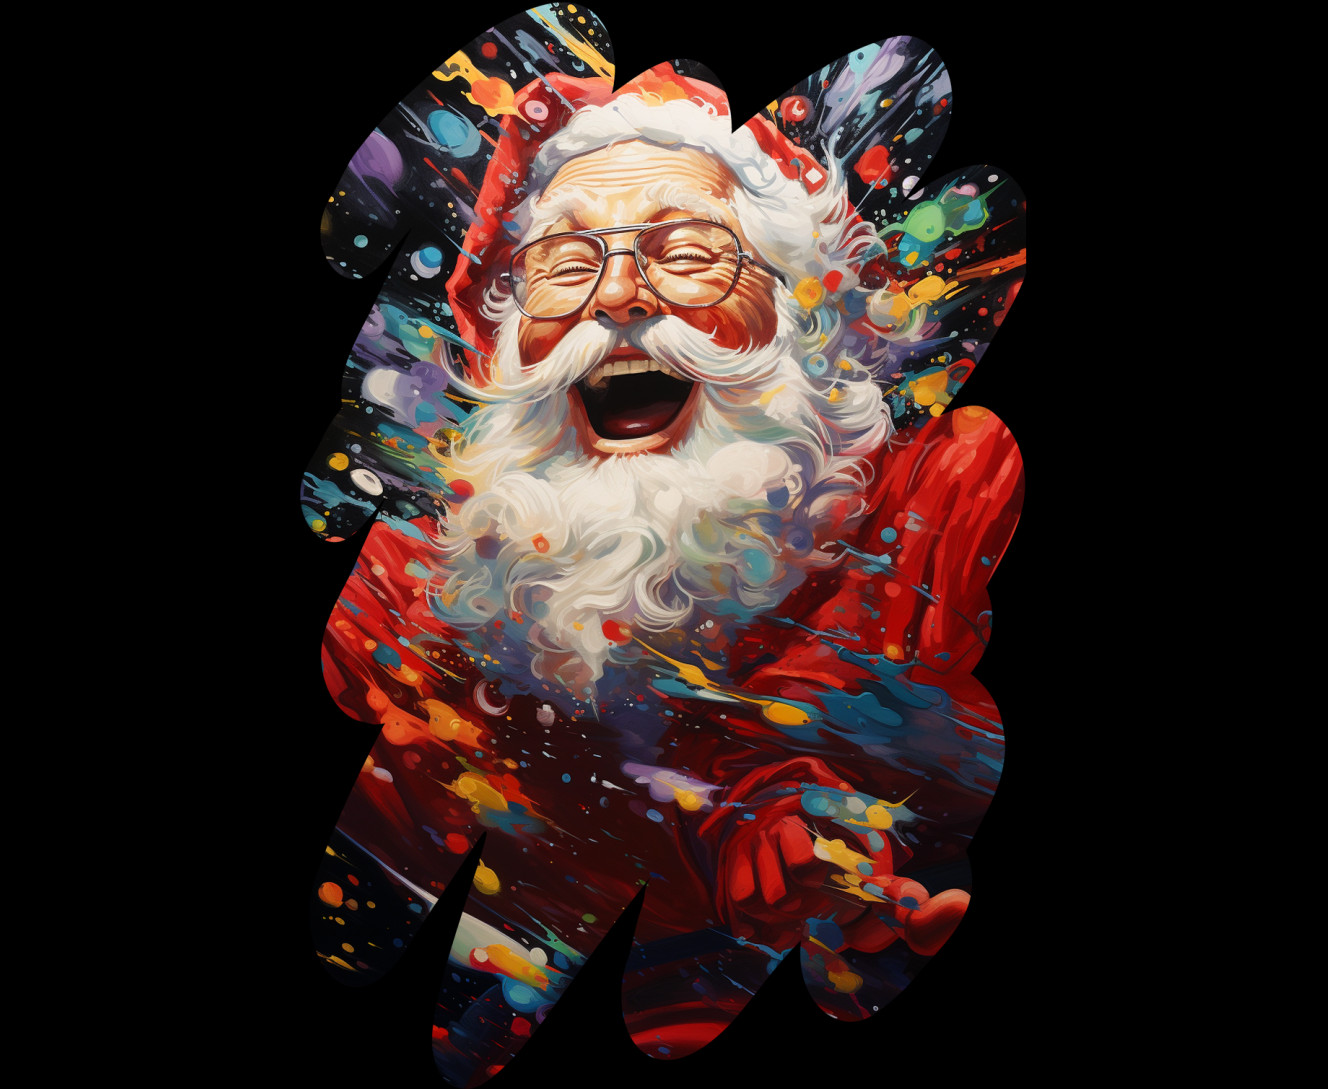  Cheerful Santa Claus